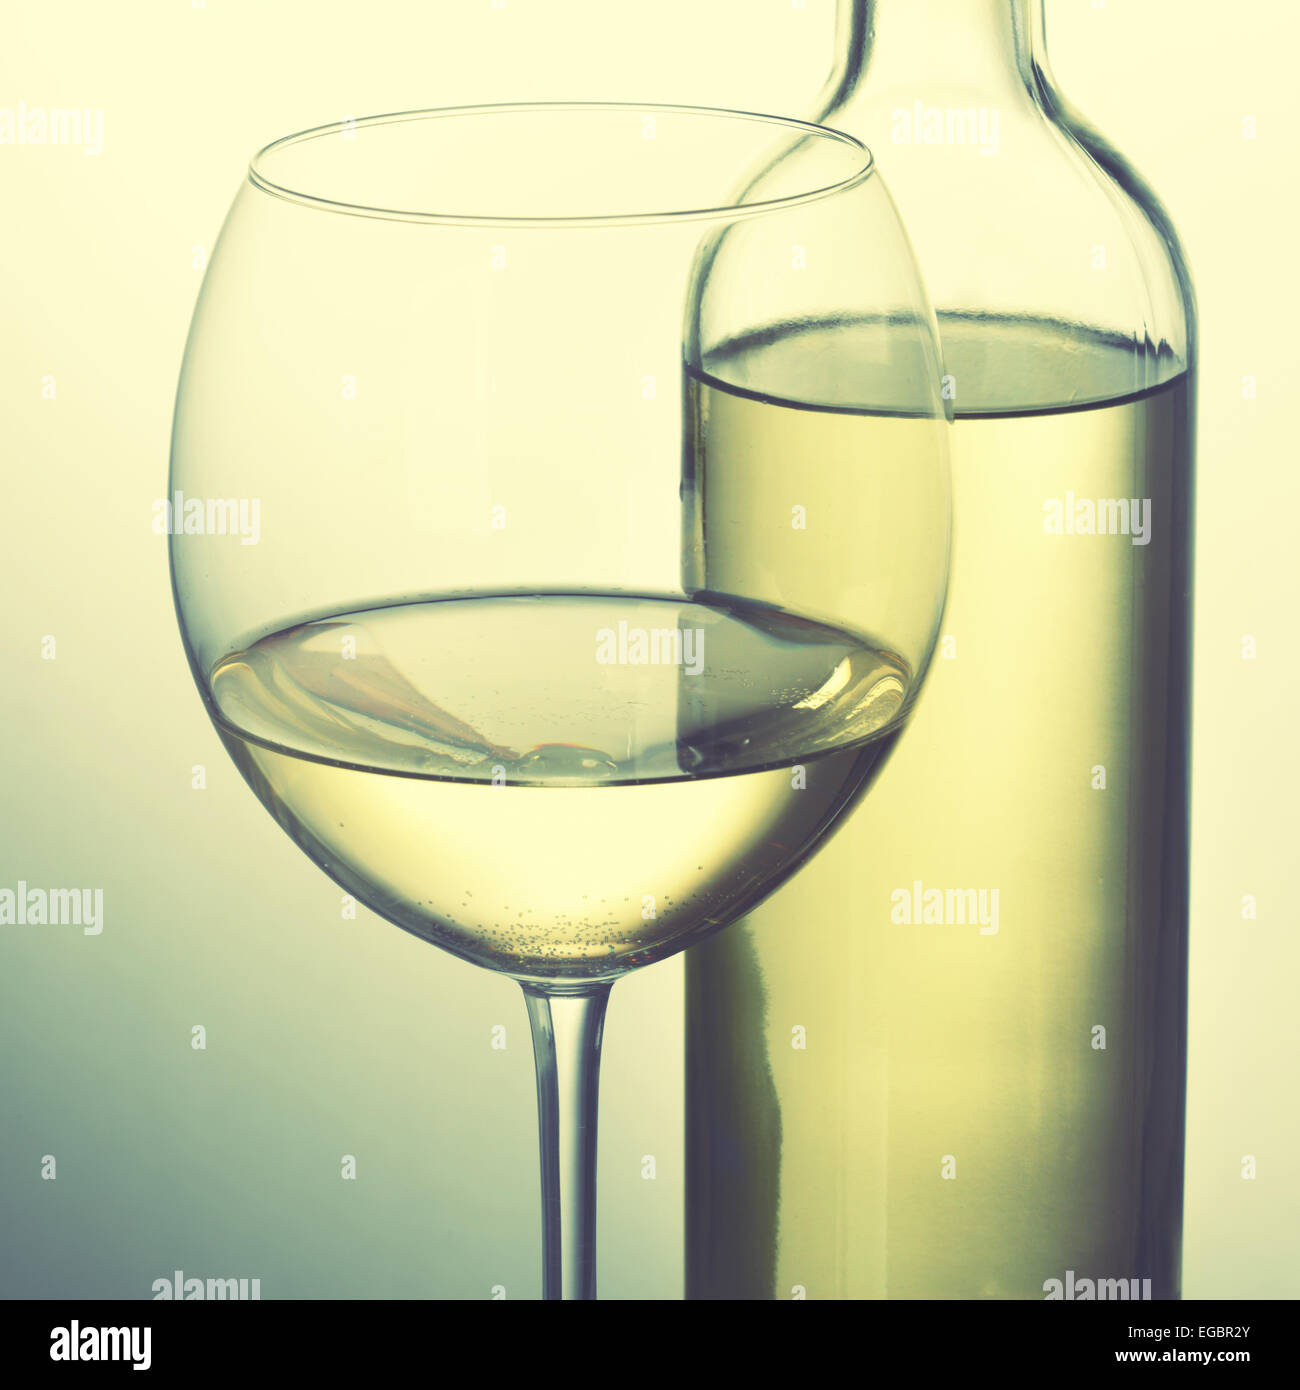 Bouteille de vin blanc et de verre. Image style rétro Banque D'Images